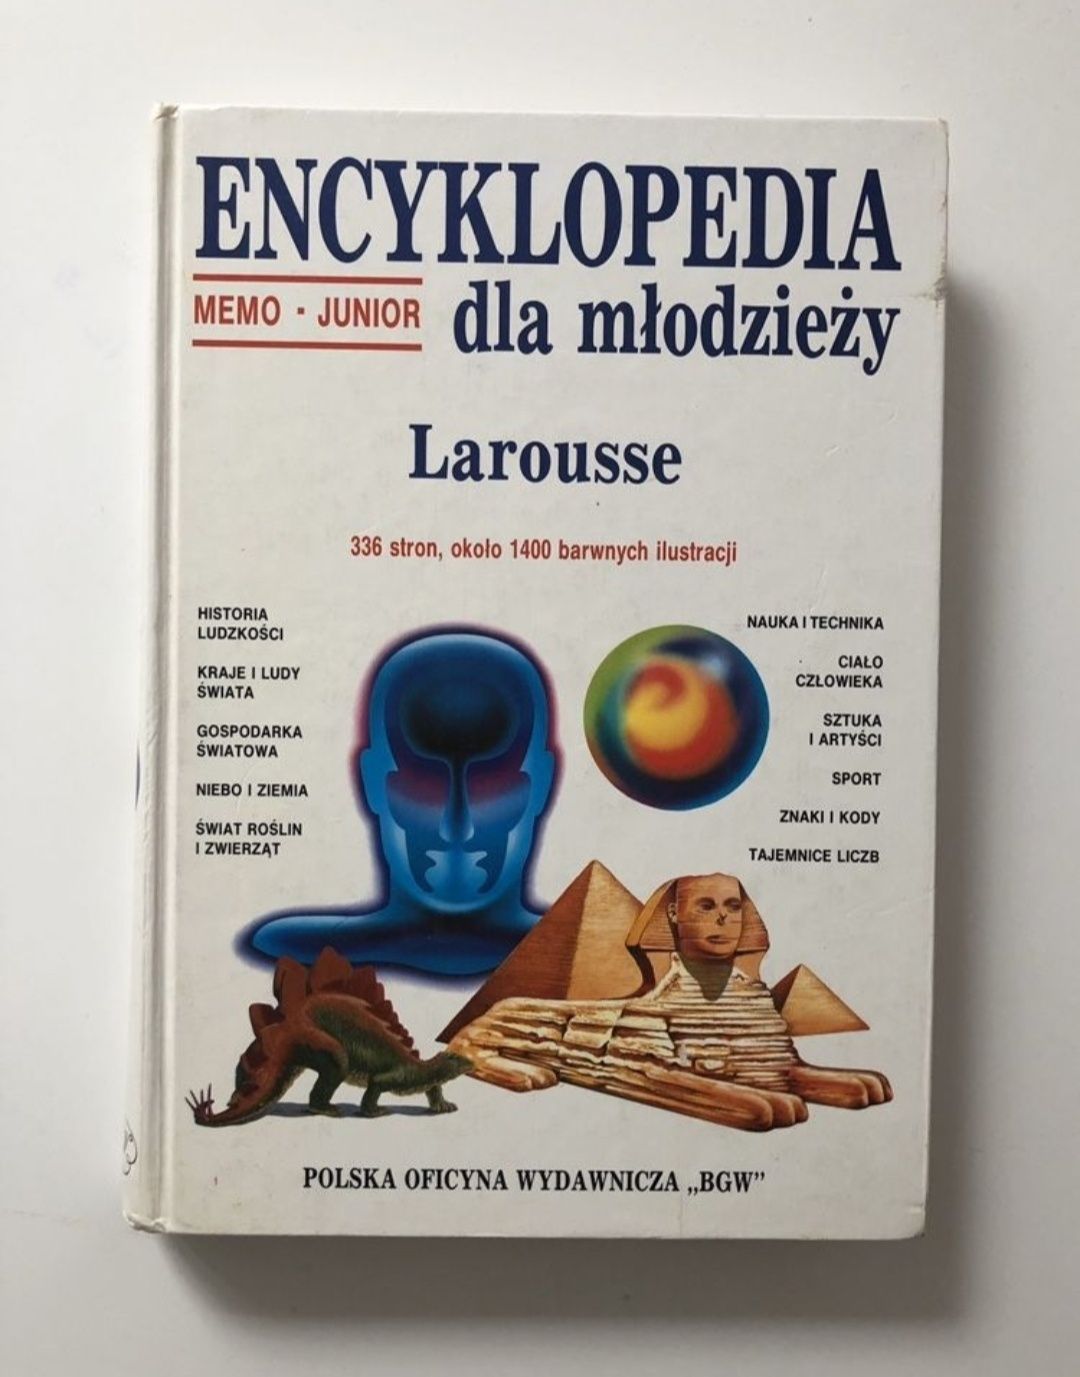 Encyklopedia dla młodzieży Larrouse Memo Junior